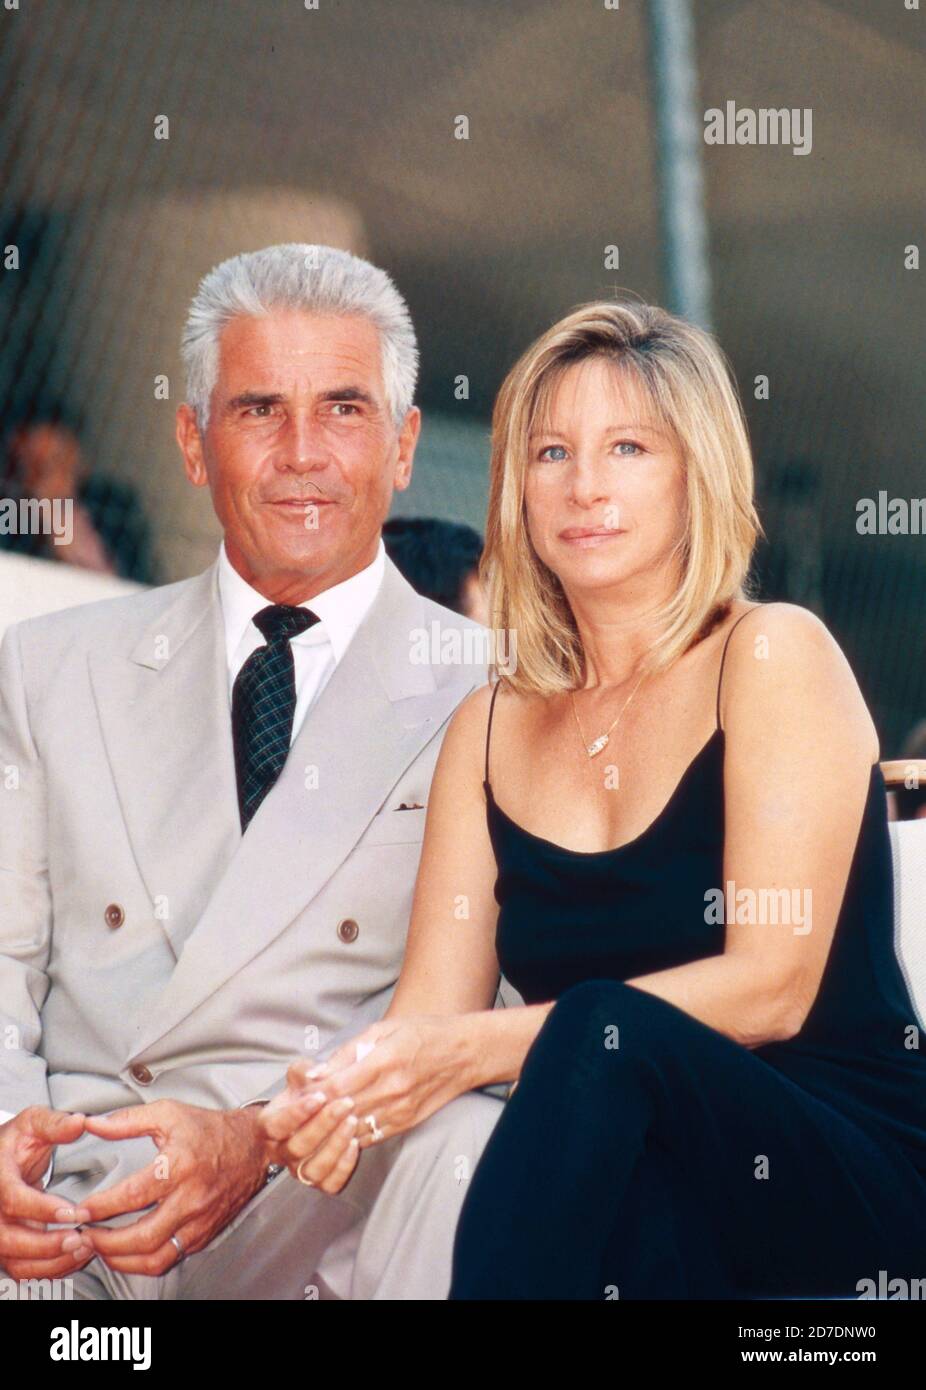 Barbra Streisand, amerikanische Sängerin und Schauspielerin, mit Ehemann James Brolin in Los Angeles, Kalifornien, USA 1998. Stock Photo